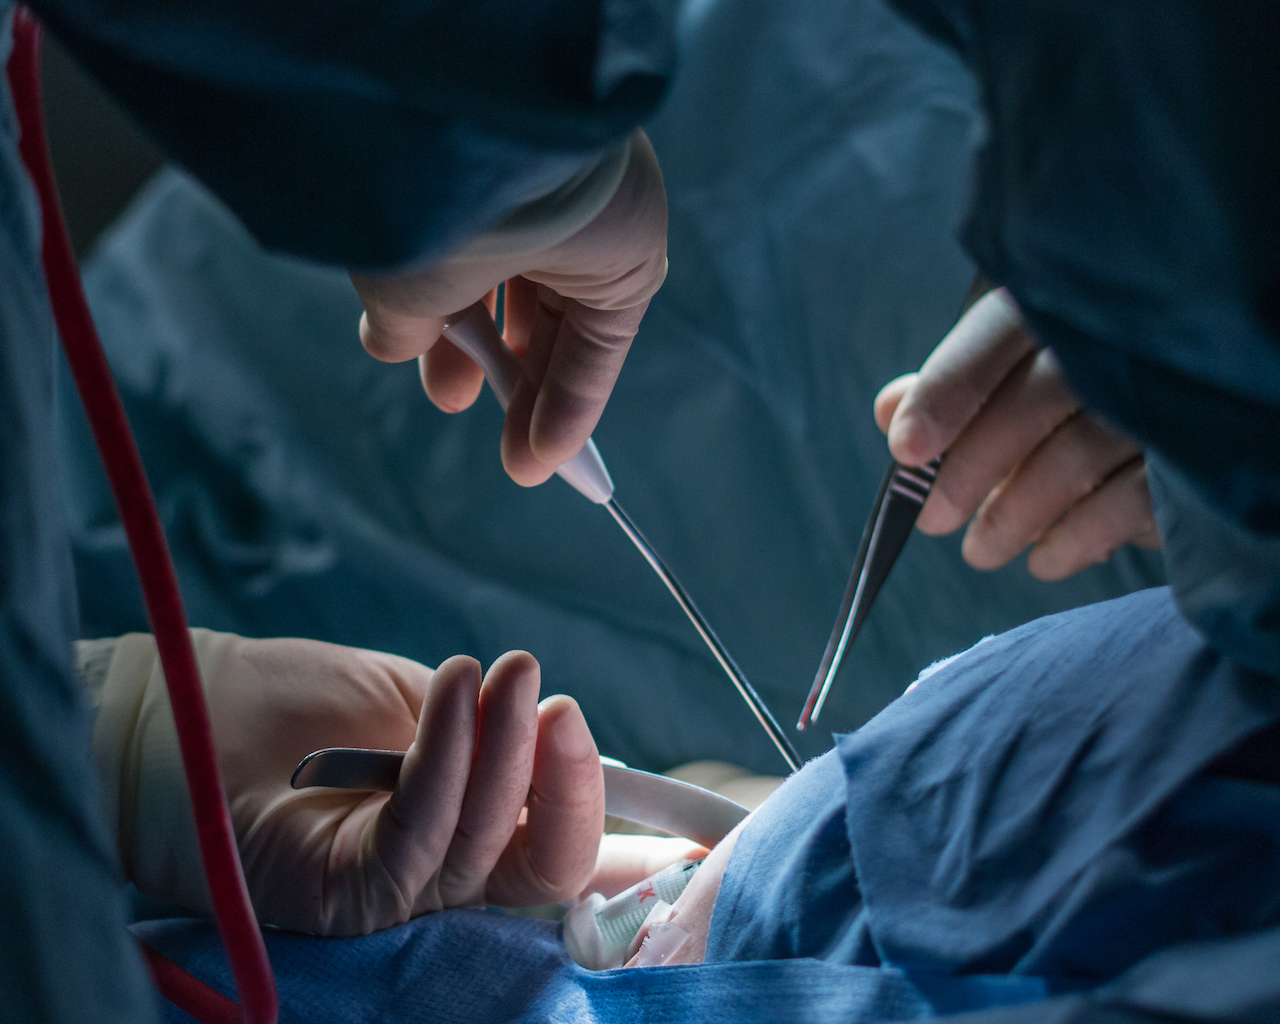 În unele cazuri, ocluzia poate necesita intervenția chirurgicală